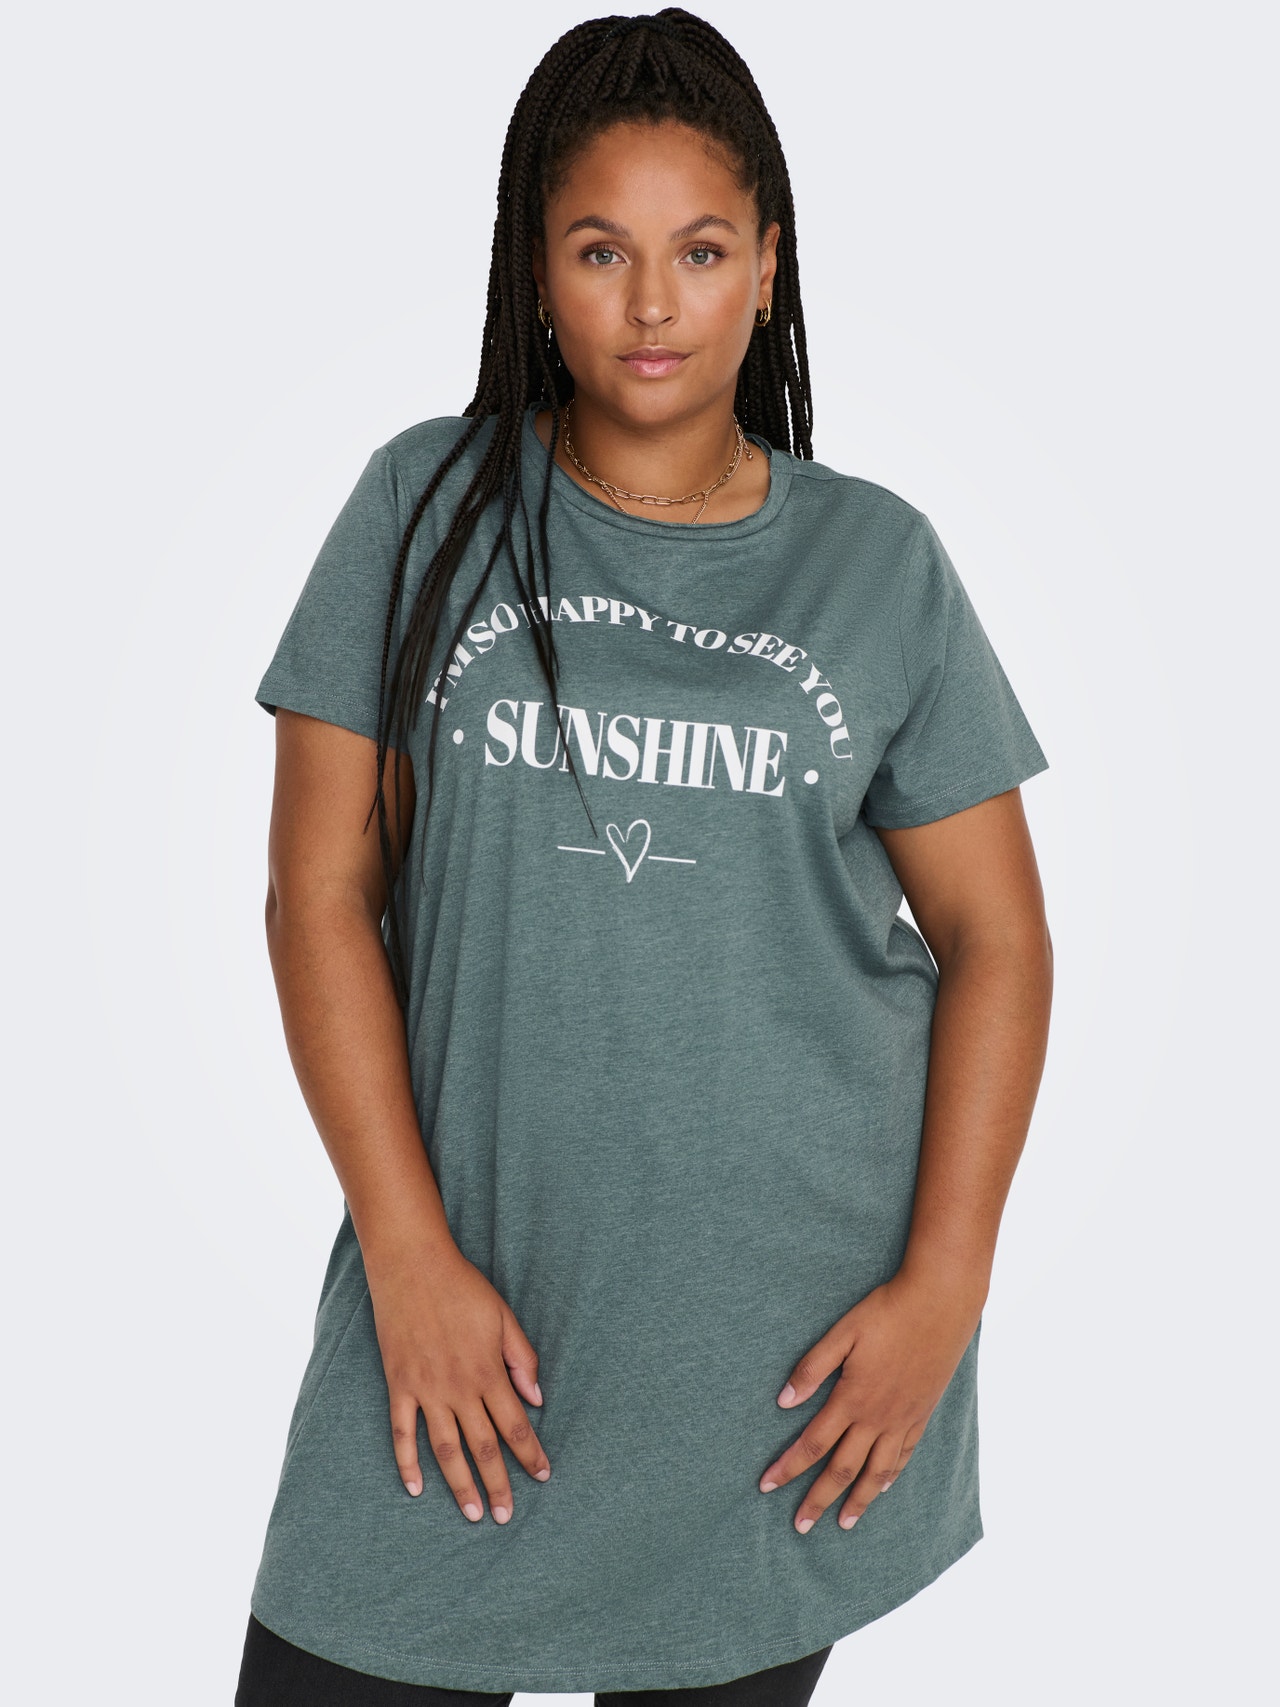 ONLY Curvy - Long T-Shirt -Balsam Green - 15289125